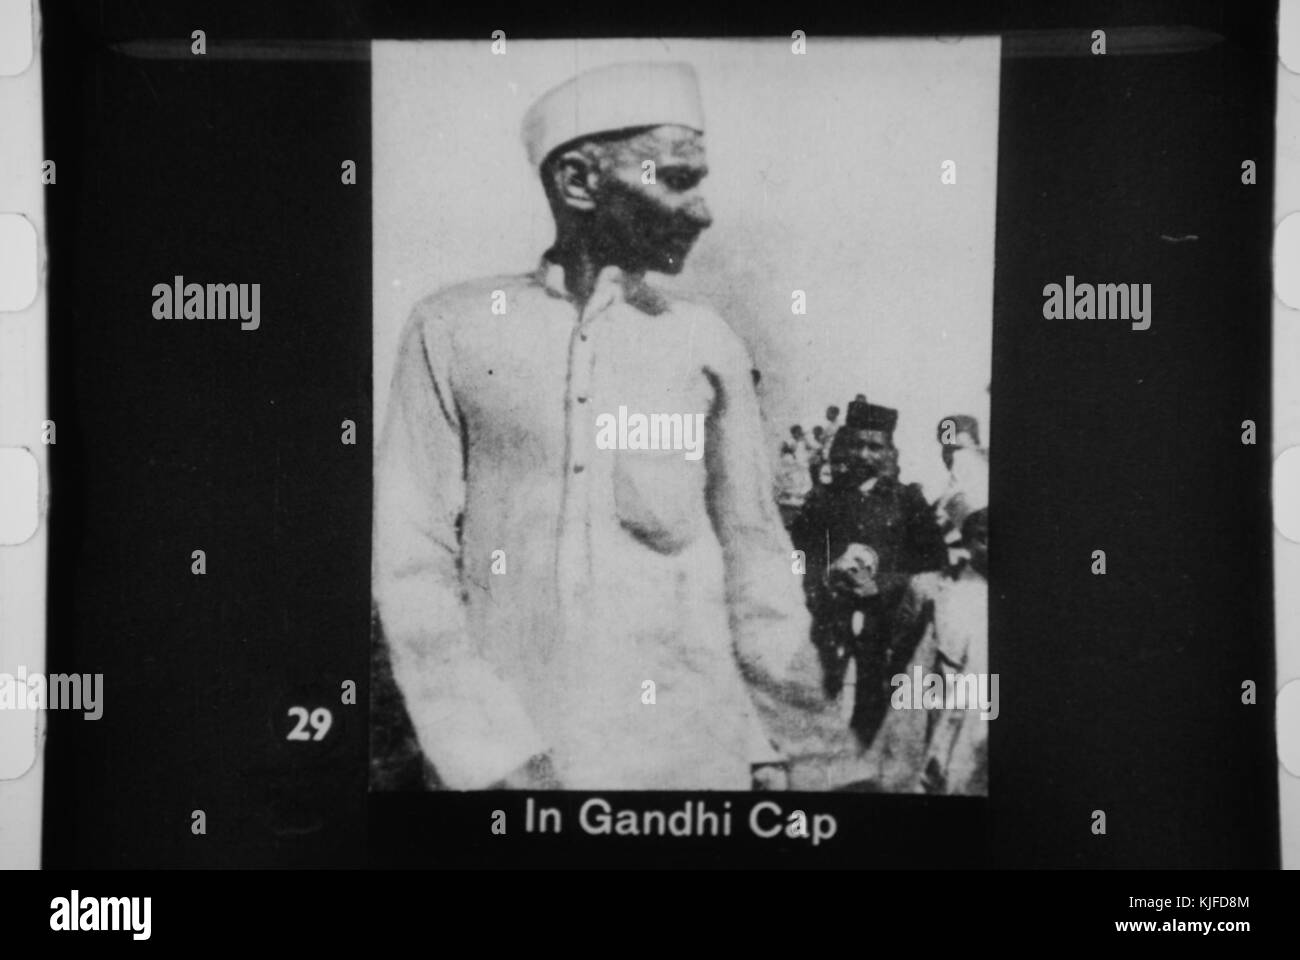 Gandhi cap Stock Photo